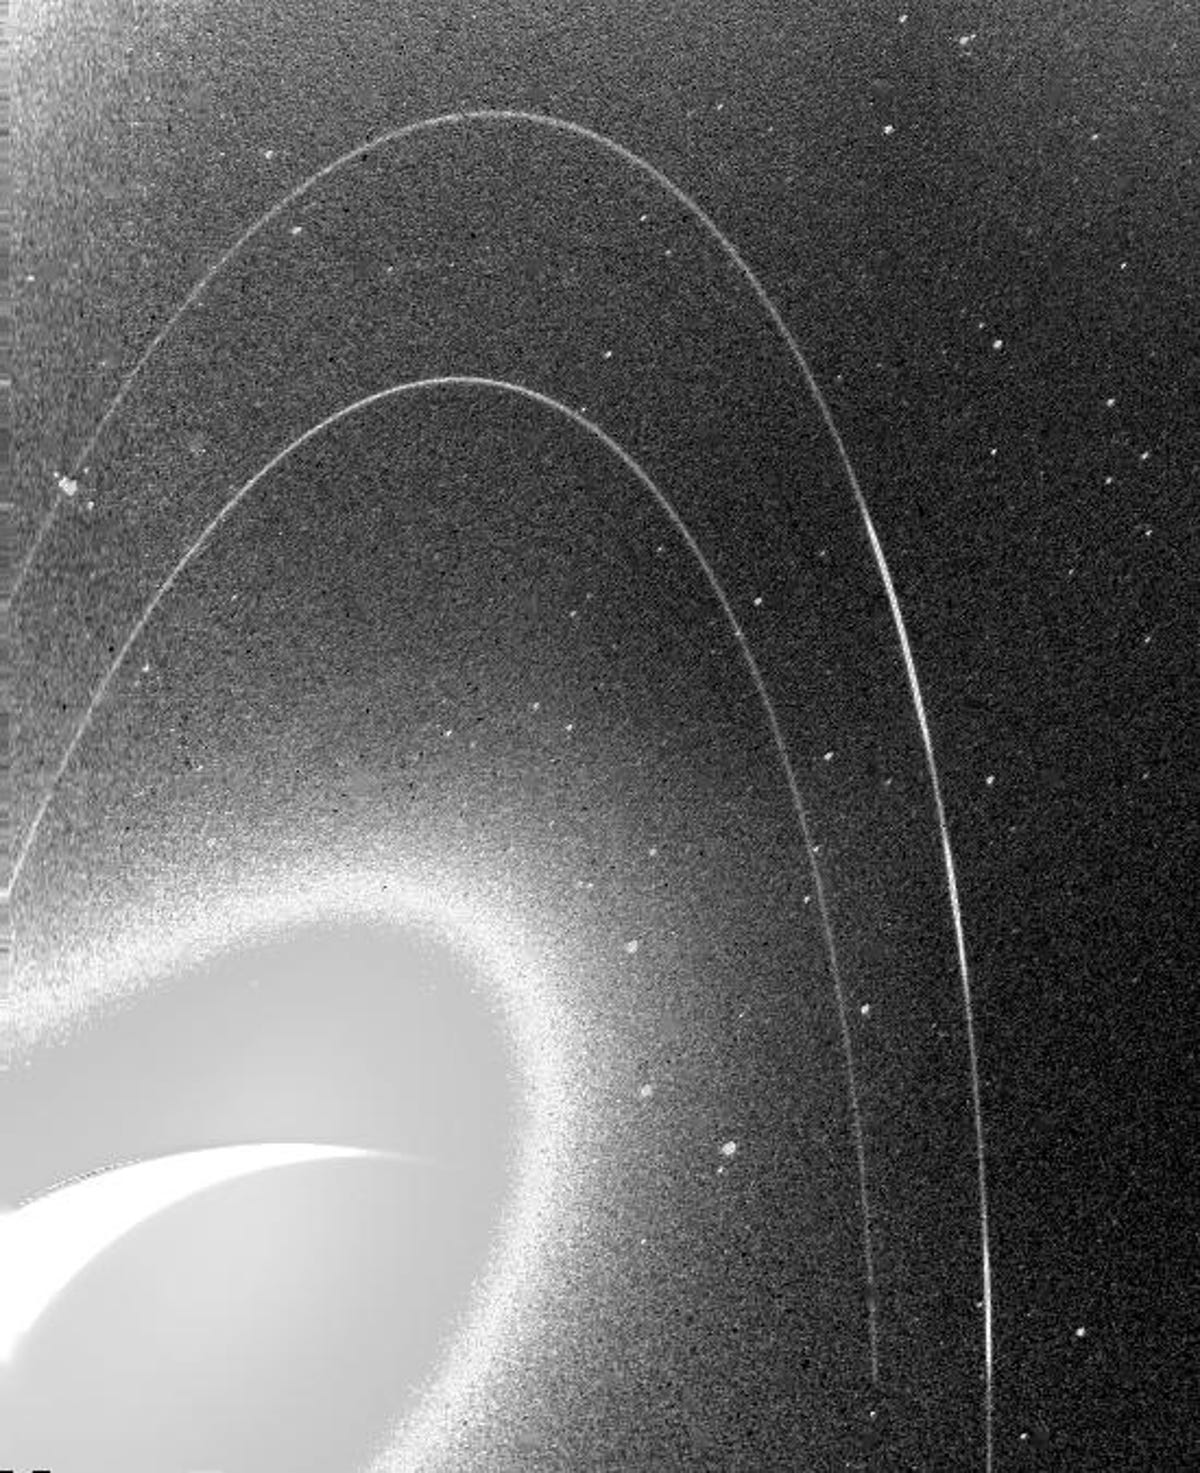 Μια κοκκώδης, ασπρόμαυρη εικόνα δείχνει τα εύθραυστα δαχτυλίδια του Ποσειδώνα.